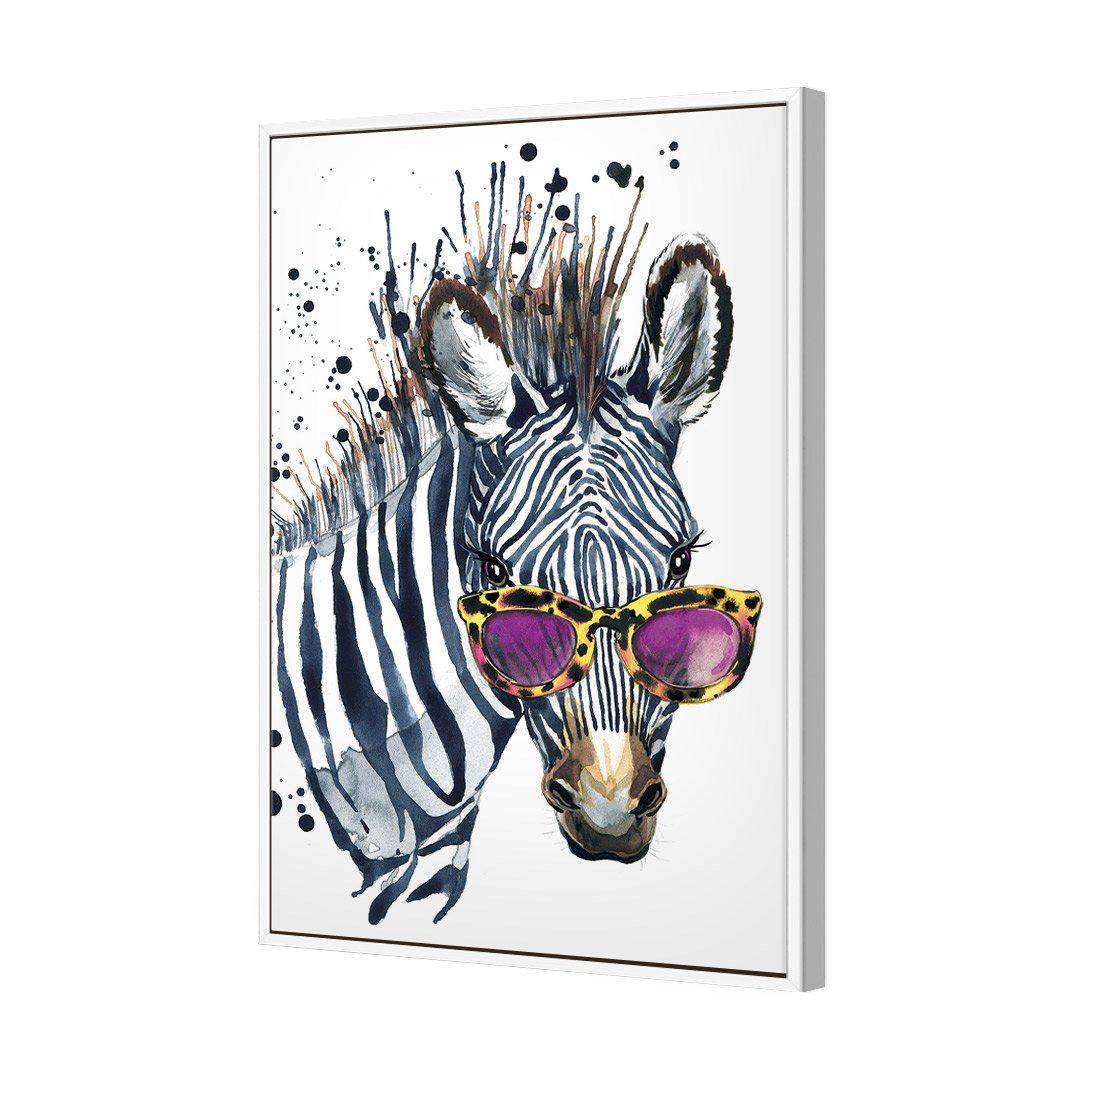 Cool Zebra Canvas Art-Canvas-Wall Art Designs-45x30cm-Canvas - White Frame-Wall Art Designs